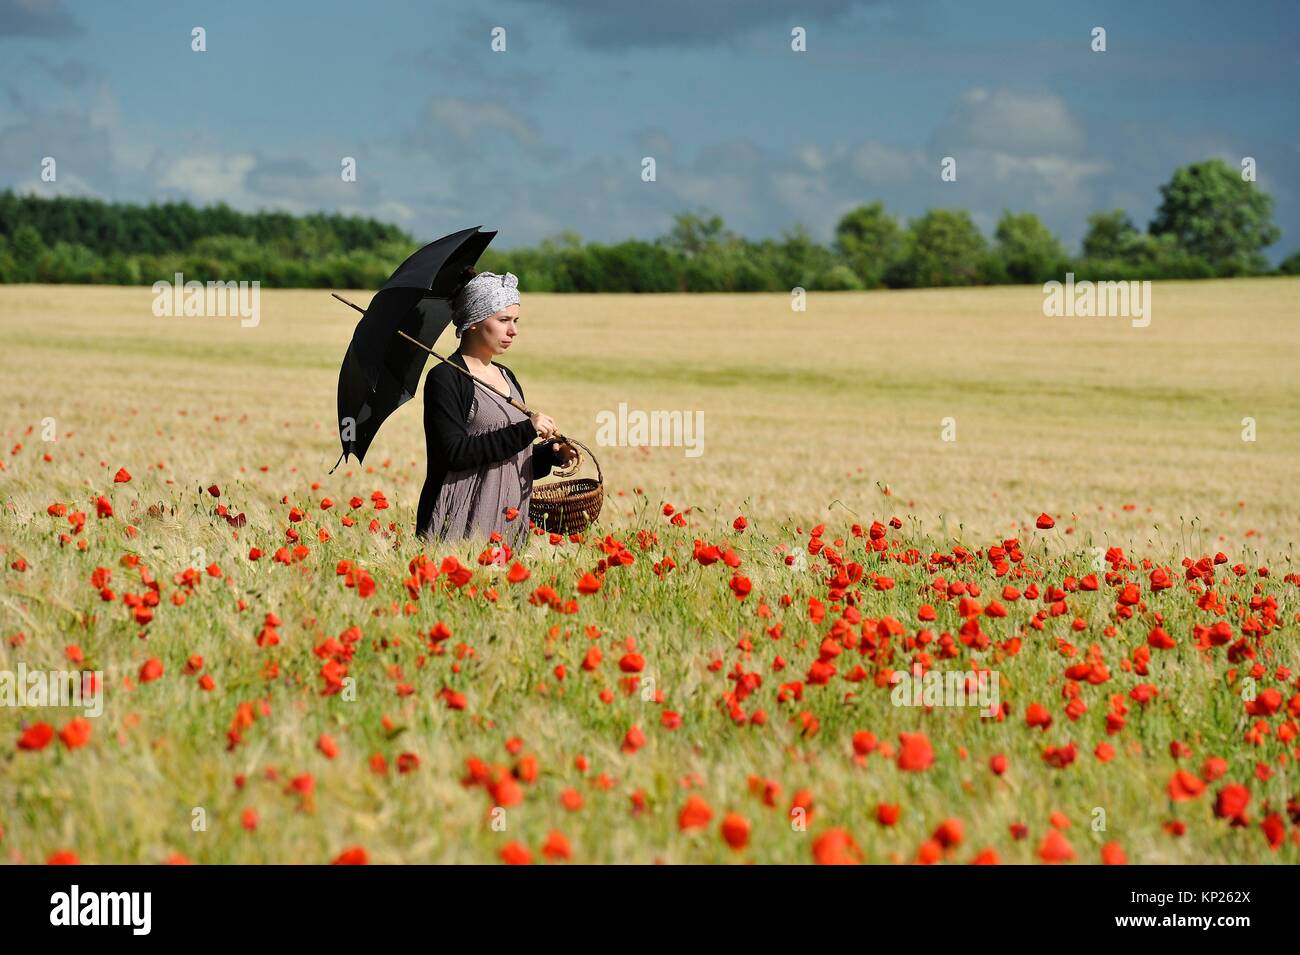 Mujer joven con sombrilla en un campo de cereales salpicado de amapolas, Francia, Europa. Foto de stock